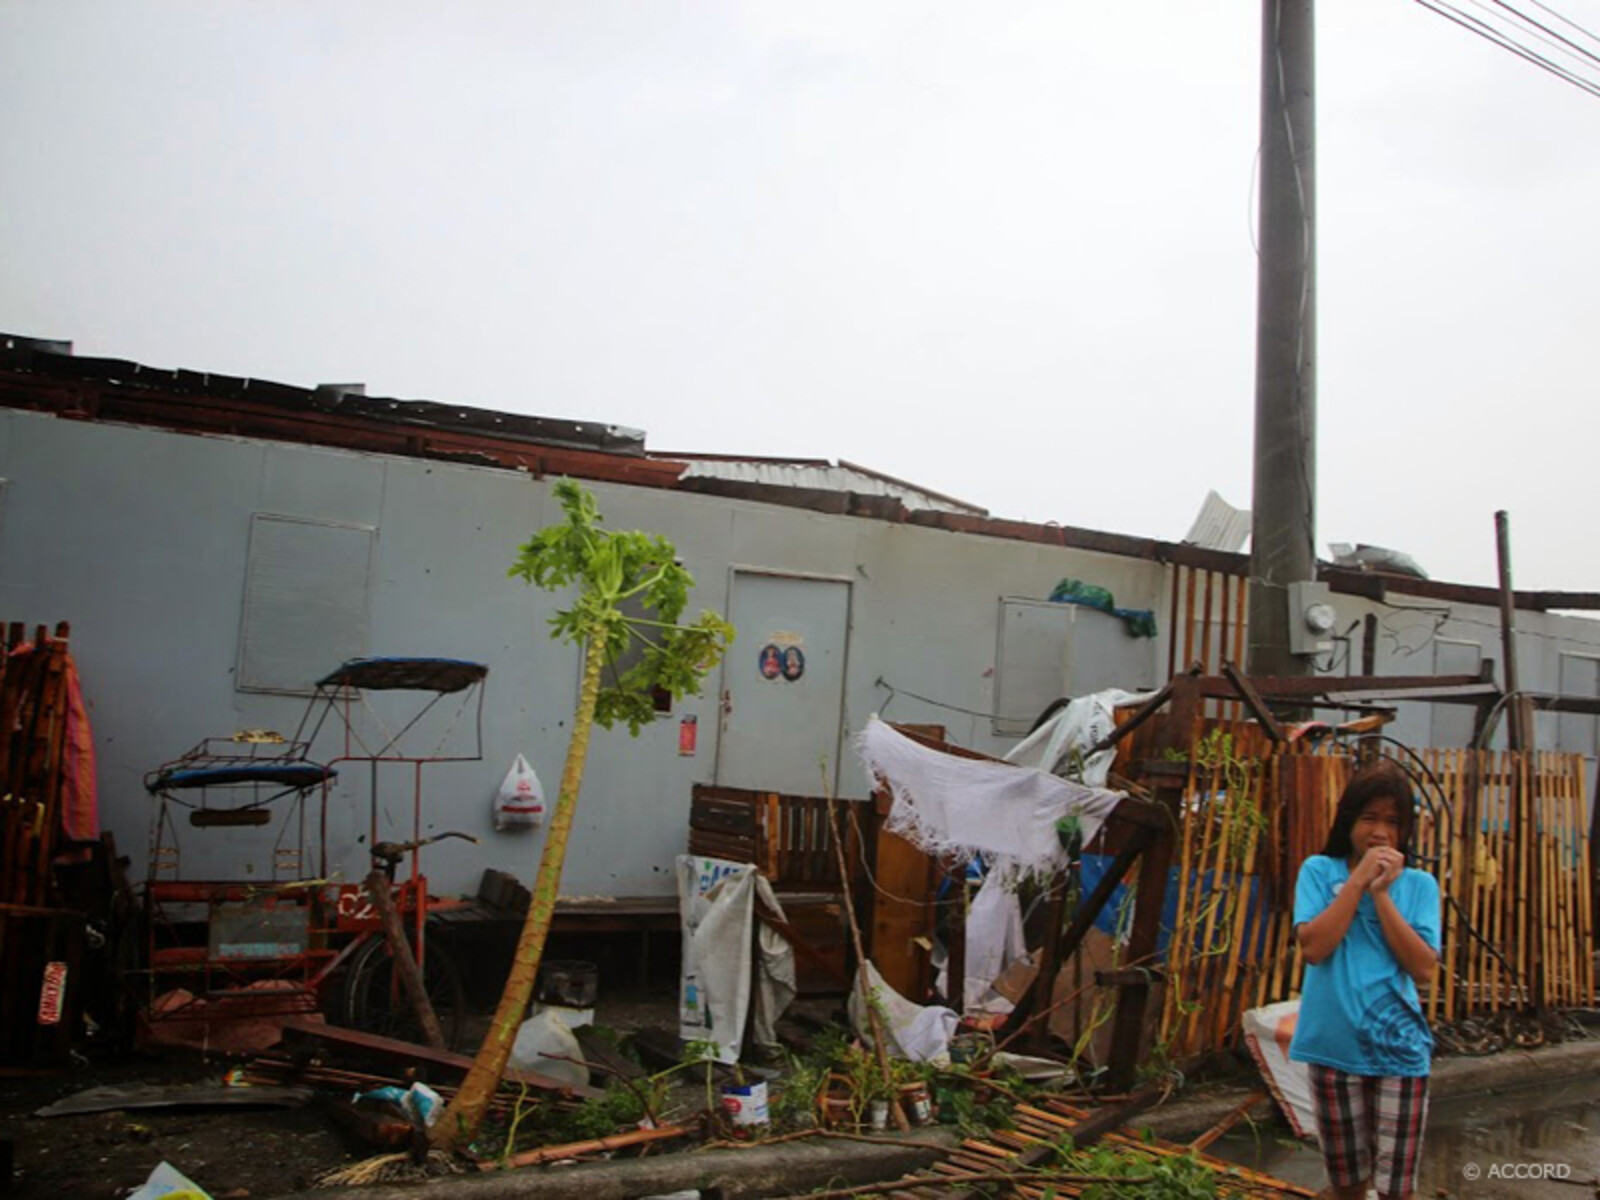 Die Unterkünfte, die unsere Bündnispartner nach Taifun Haiyan auf den Philippinen errichtet haben, wurden extra katastrophensicher gebaut und haben den Sturm gut überstanden. Mancherorts dienten sie sogar als sichere Zufluchtsorte.